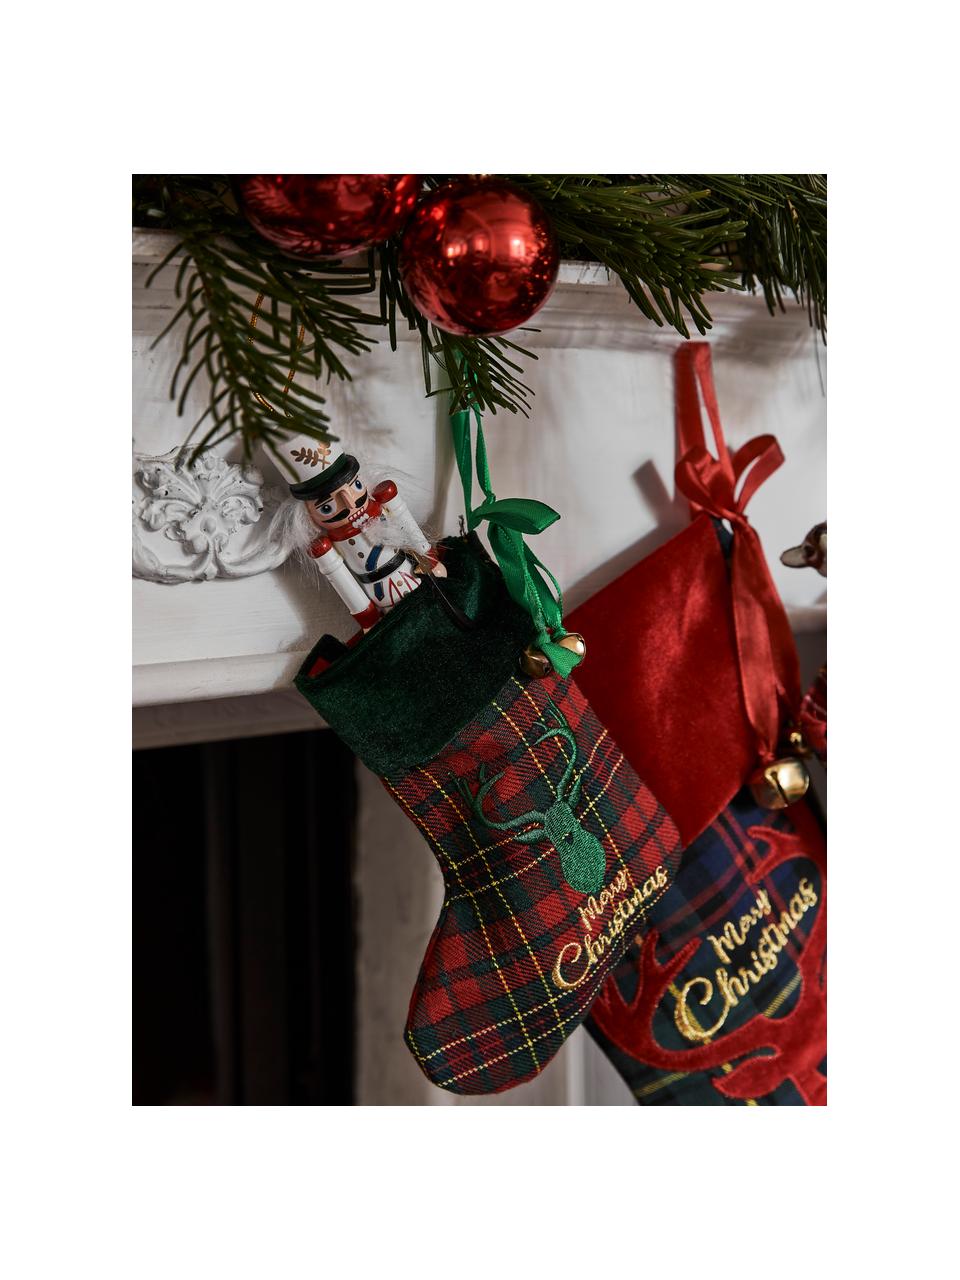 Vánoční punčochy Merry Christmas, V 17 cm, 4 ks, Polyester, bavlna, Zelená, tmavě zelená, červená, zlatá, Š 14 cm, D 17 cm